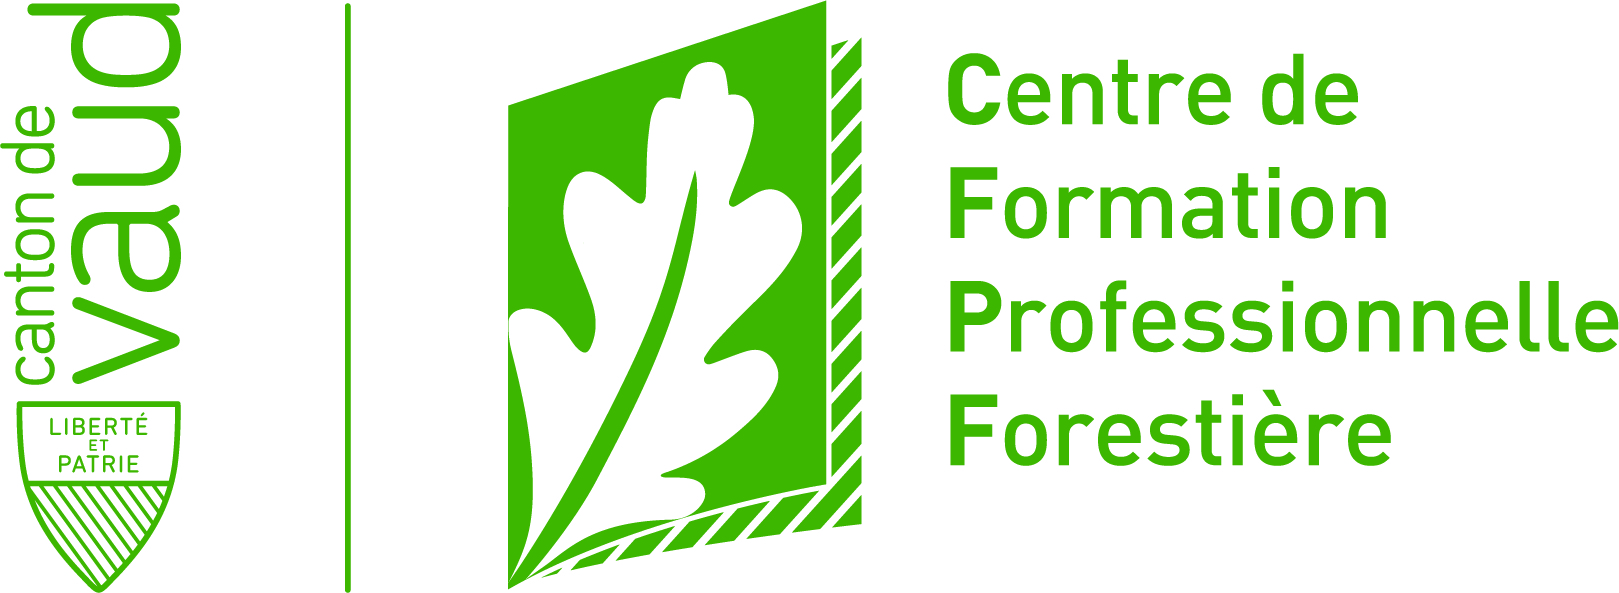 CFPF, Centre de formation professionnelle forestière logo